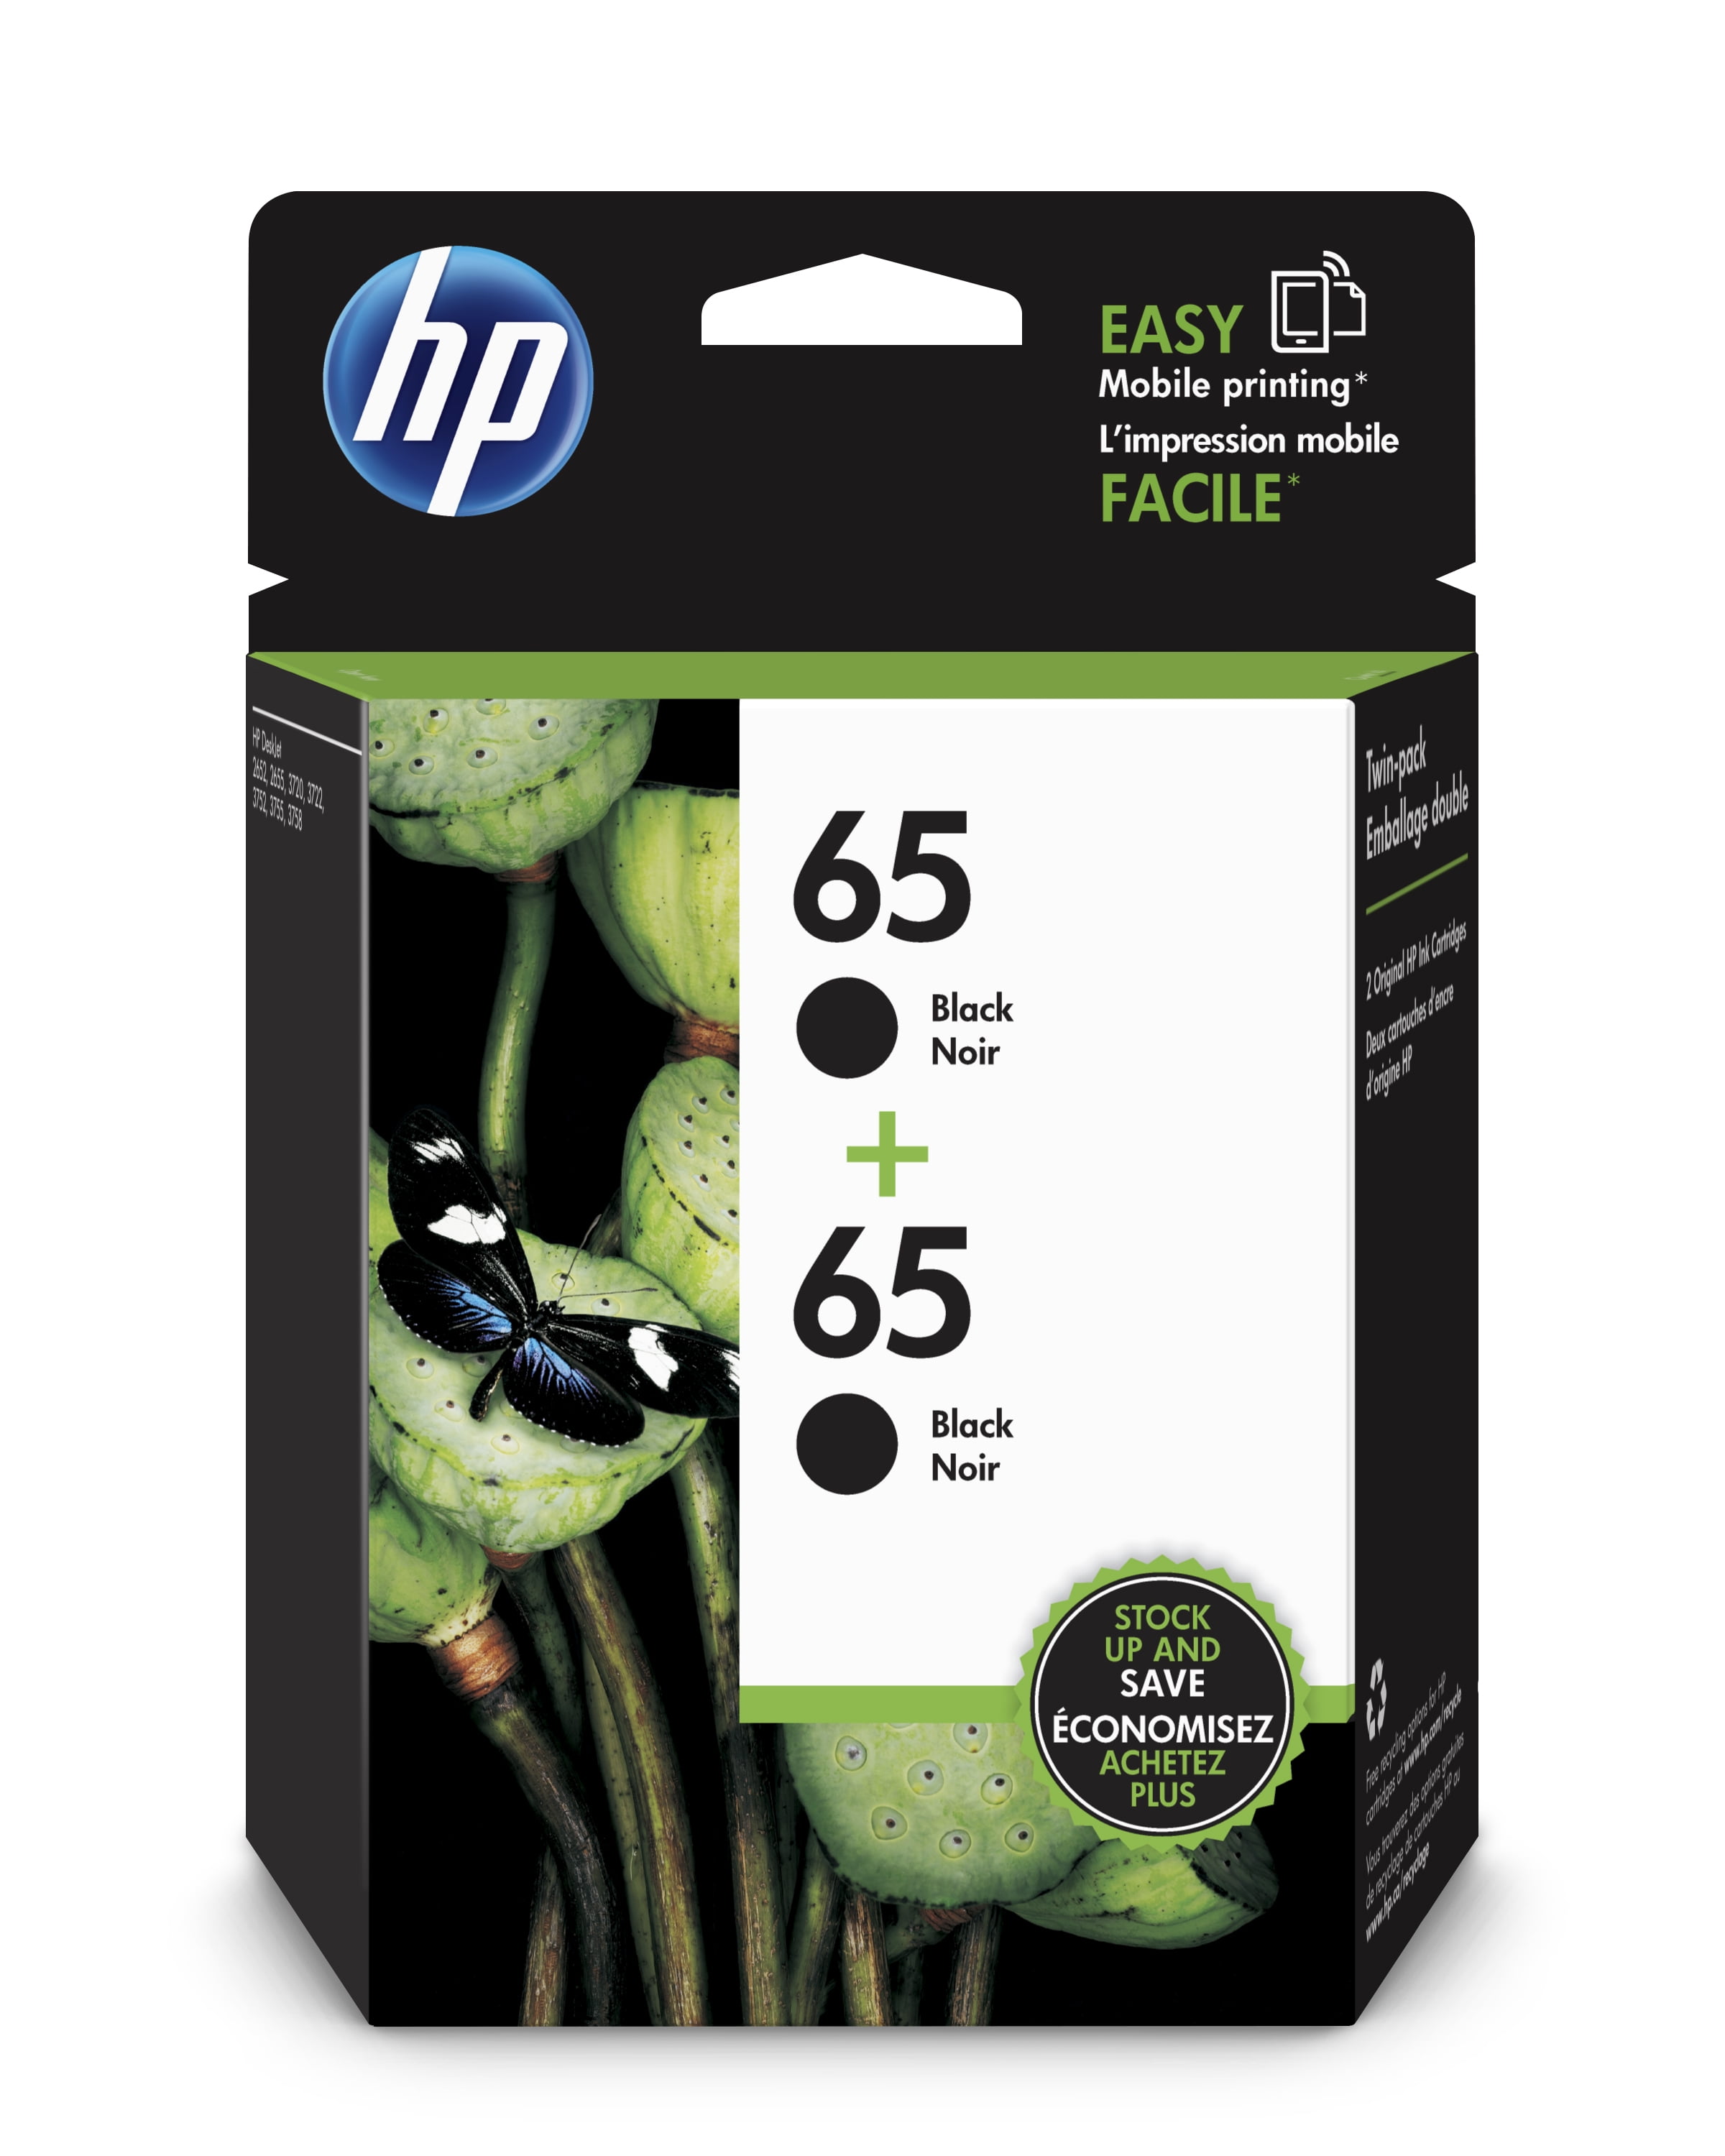 Overwinnen Veel gevaarlijke situaties spel HP 65 Ink Cartridges - Black, Tri-color, 2 Cartridges (T0A36AN) -  Walmart.com